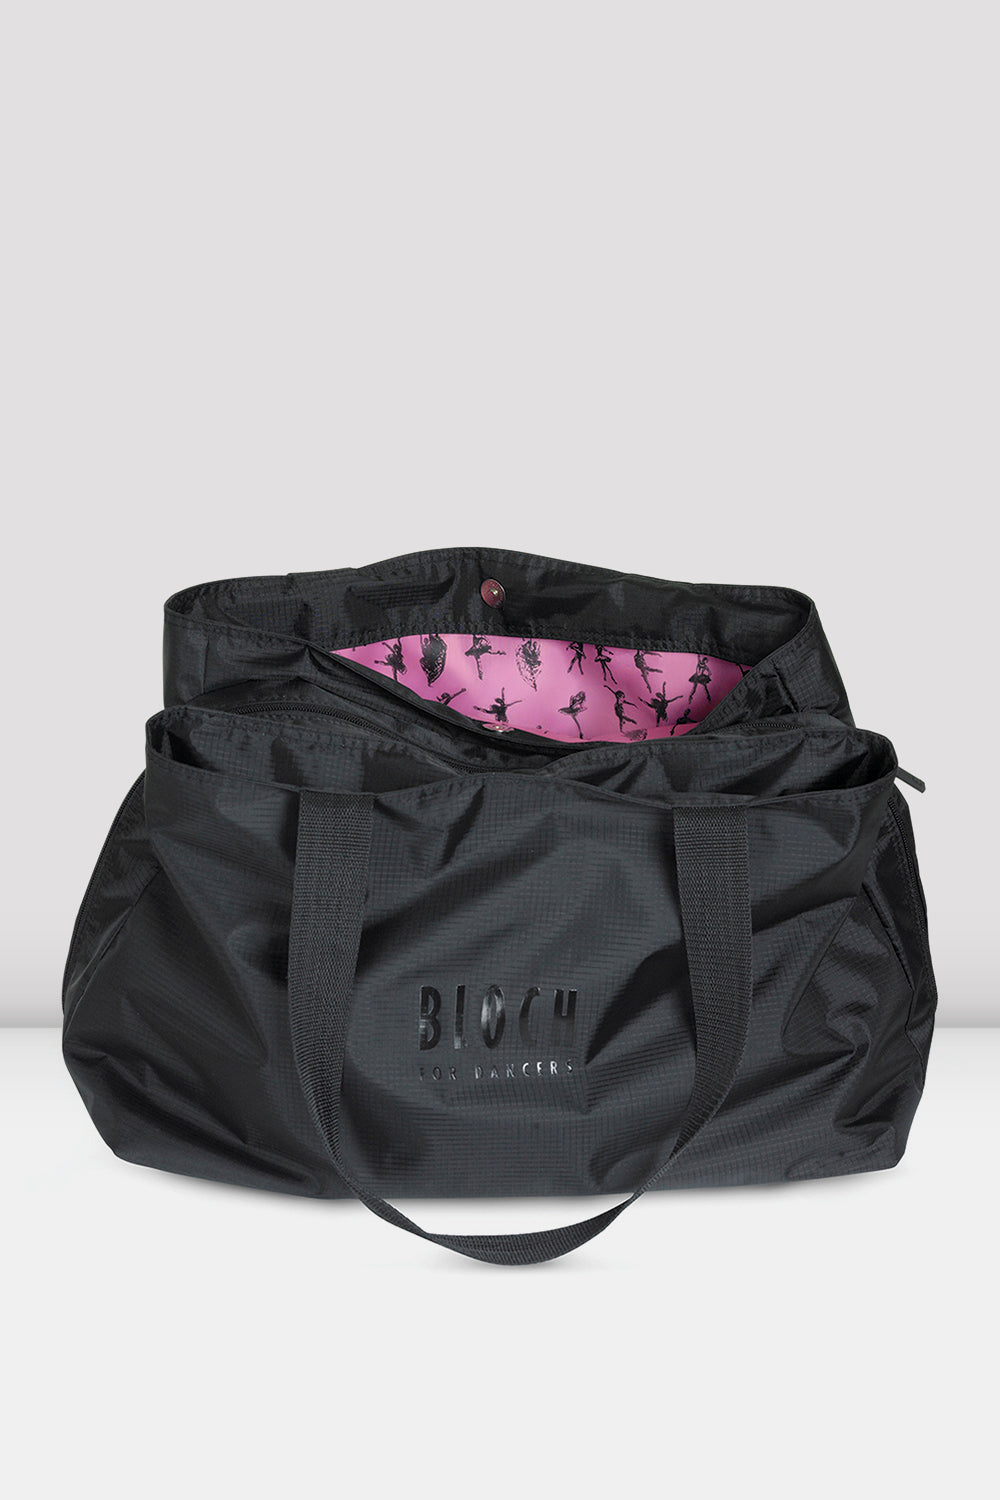 BLOCH Multi-Compartment Tote Bag, Black Nylon